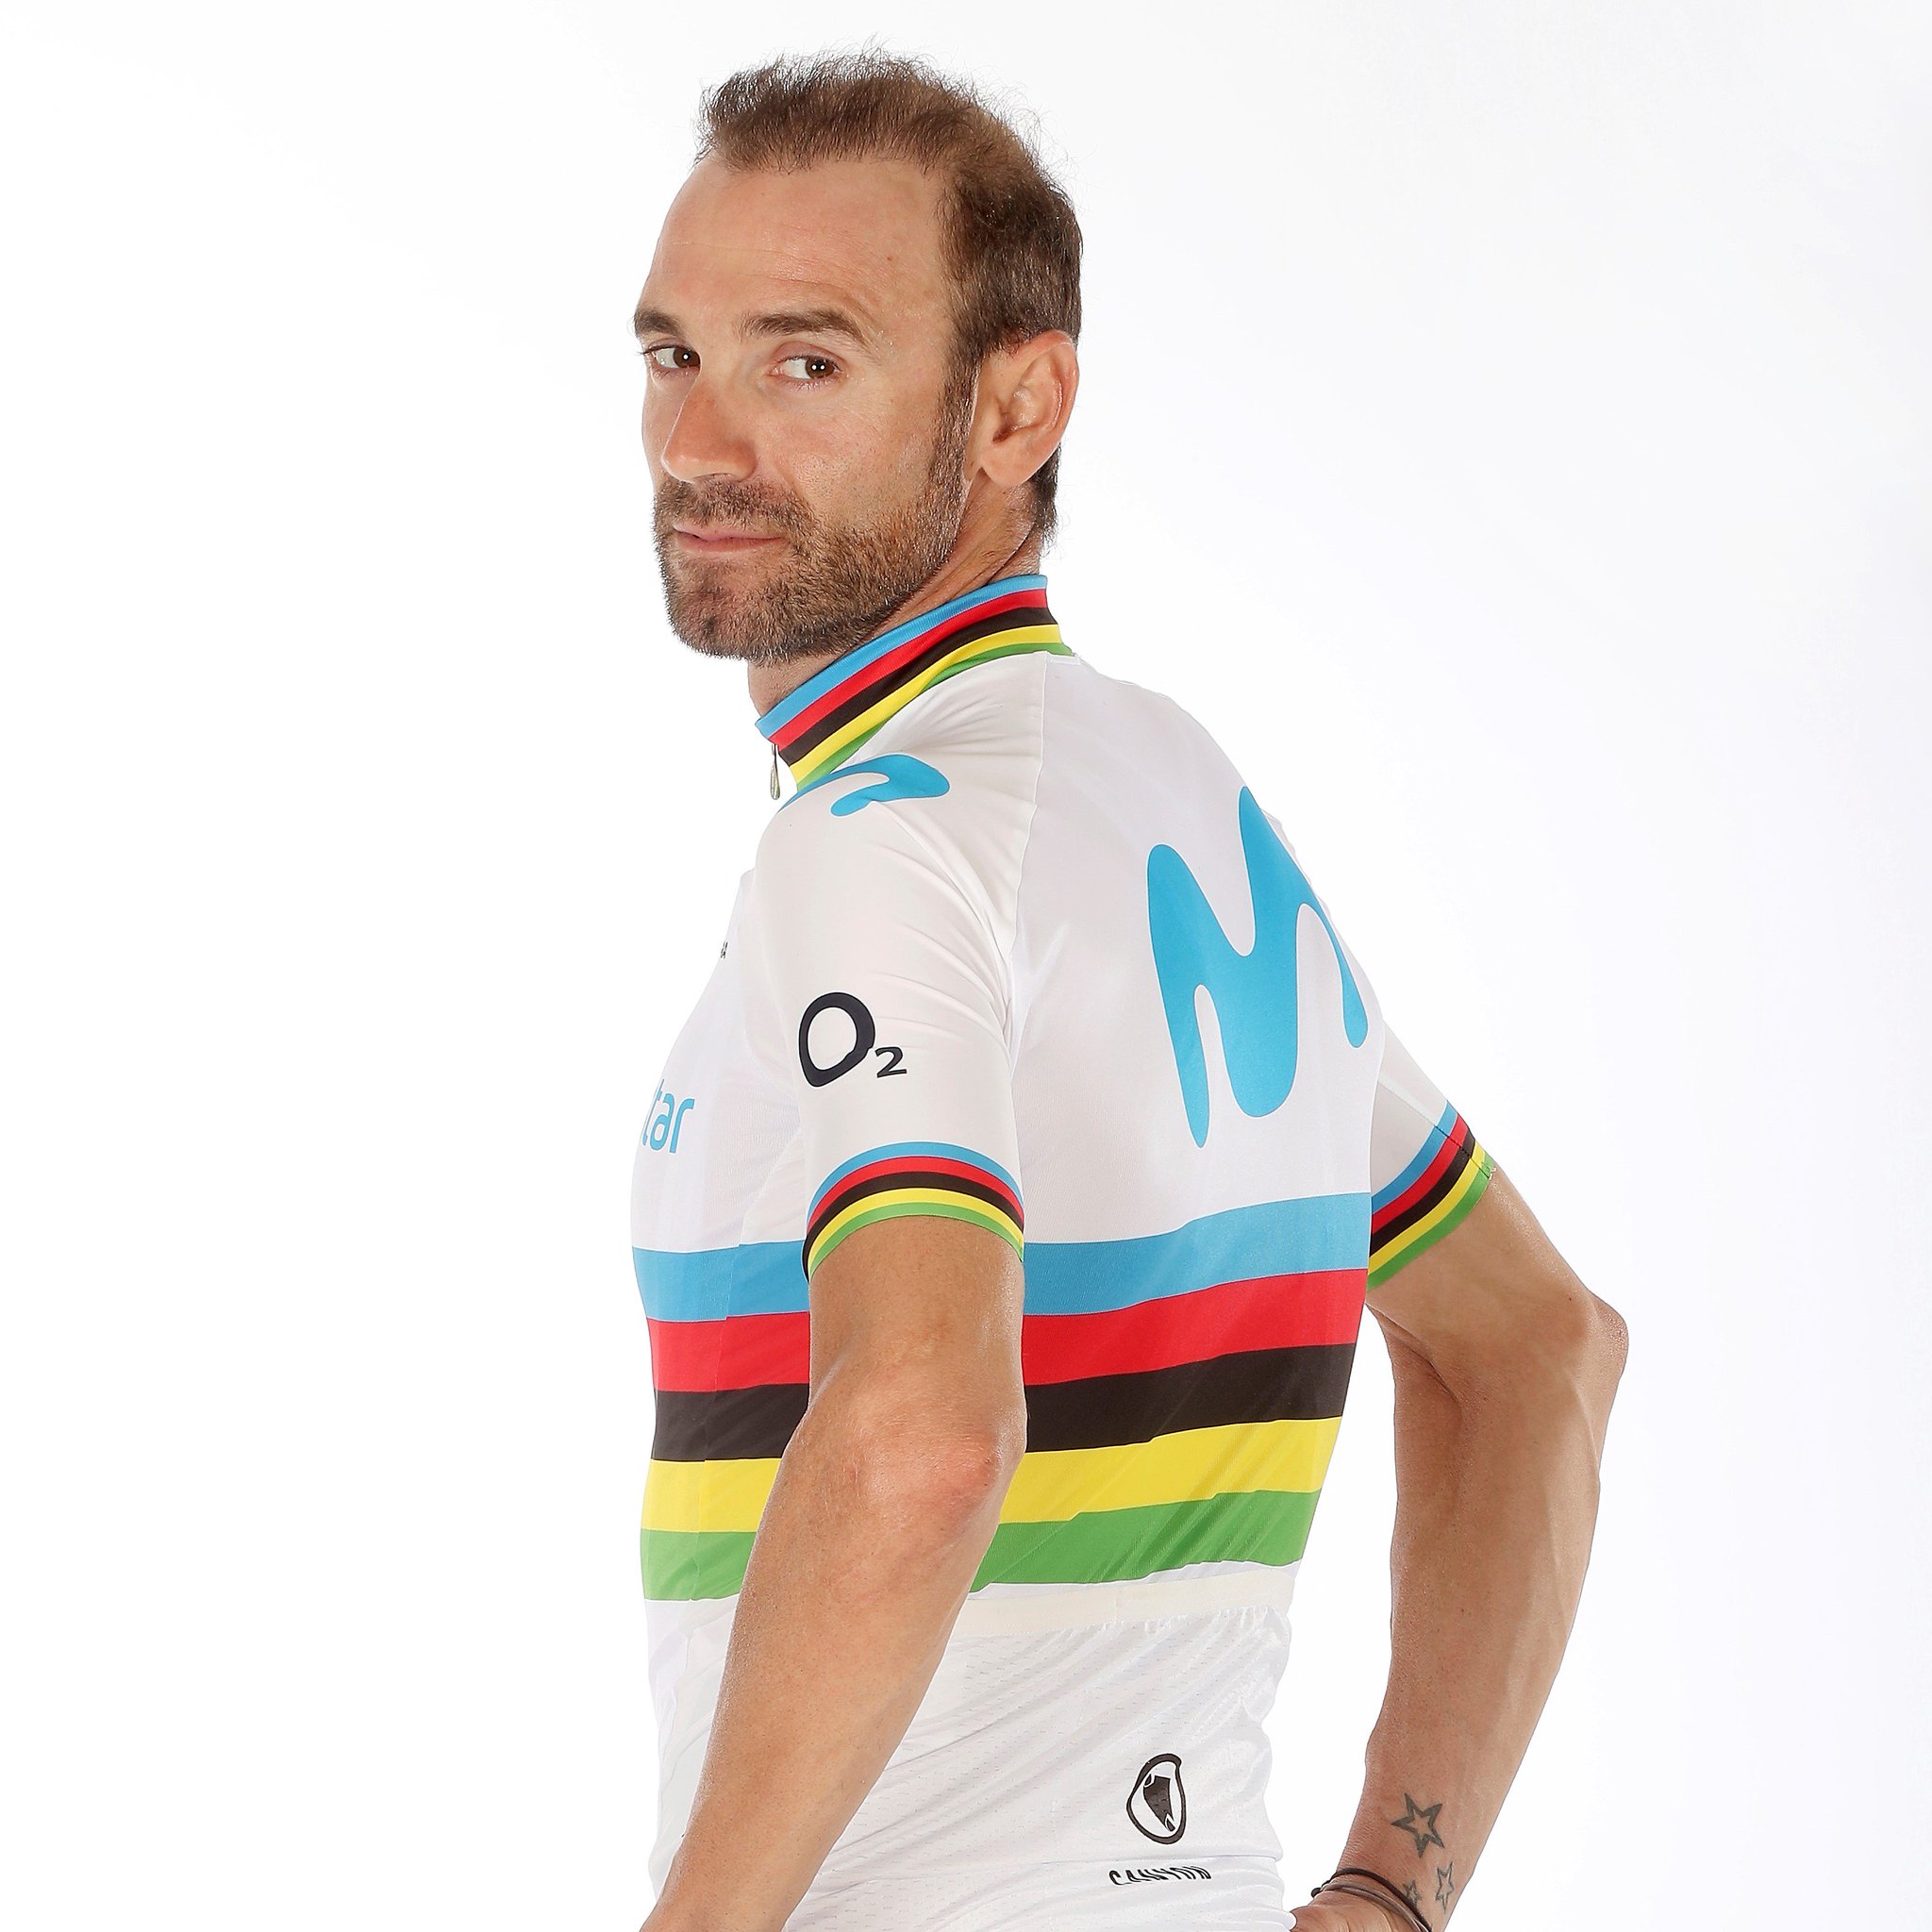 Encommium Sabroso Disciplina Movistar Team on Twitter: "🌈👕 ¡SORTEO! @movistarlikes regala 5 maillots @ endura de Campeón del Mundo, y con cada uno de ellos, un par de bidones  @Elite_cycling 'edición especial'. Participa hasta el lunes